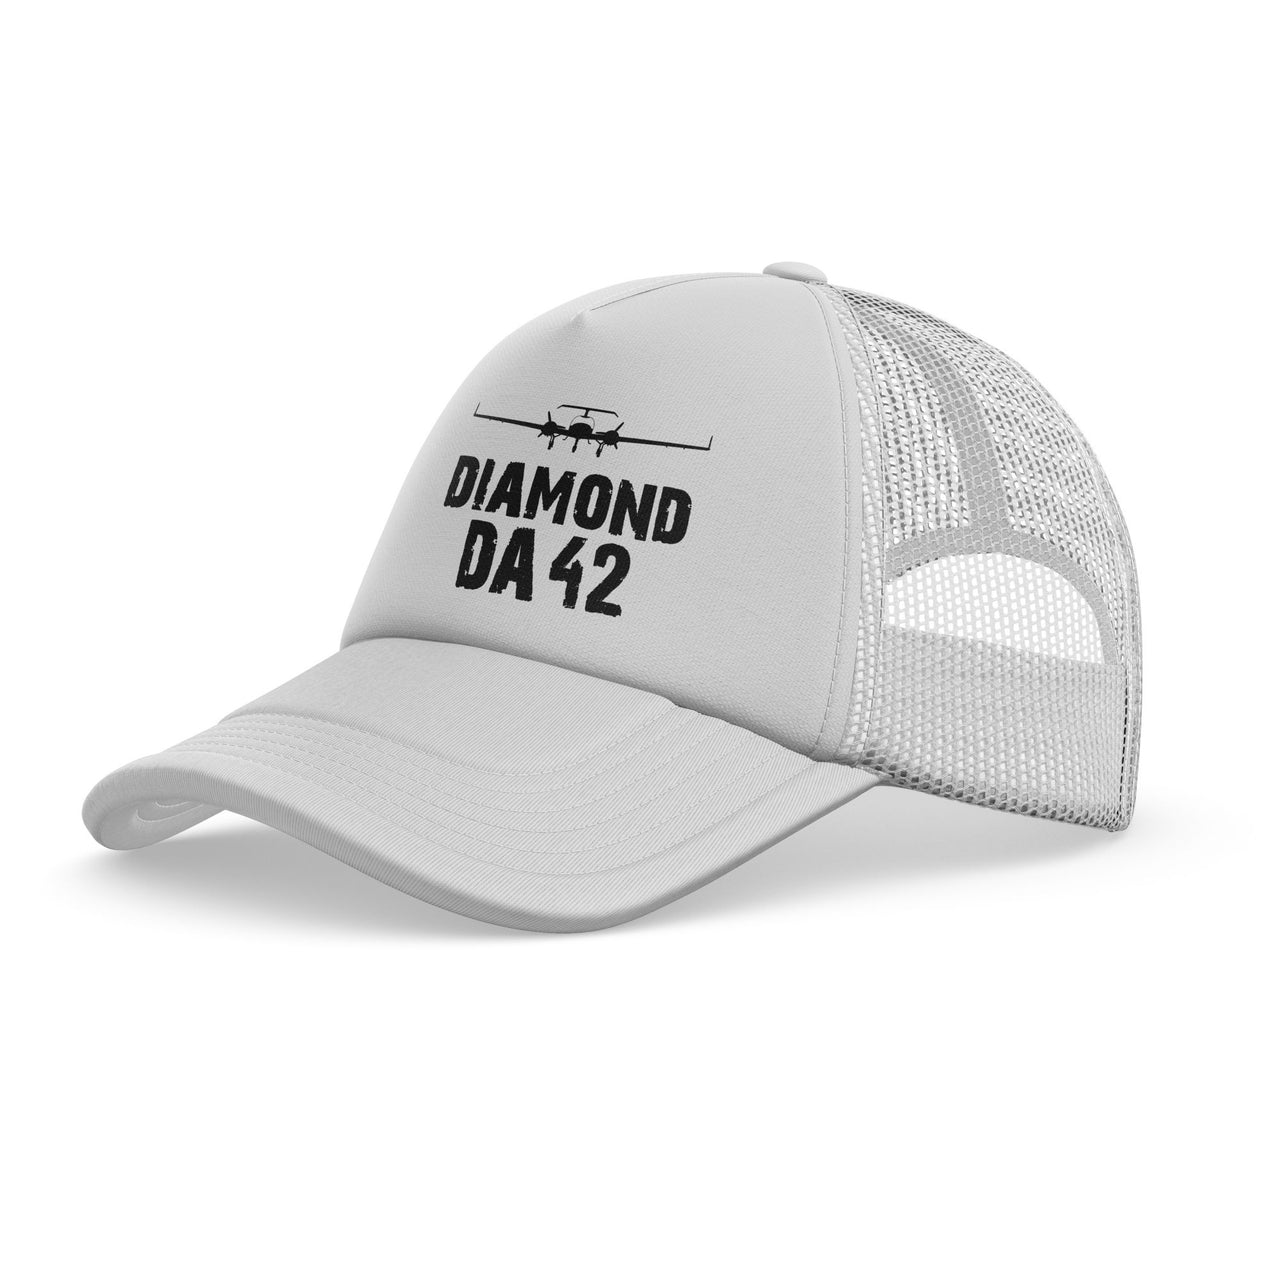 Diamond DA42 & Plane Designed Trucker Caps & Hats